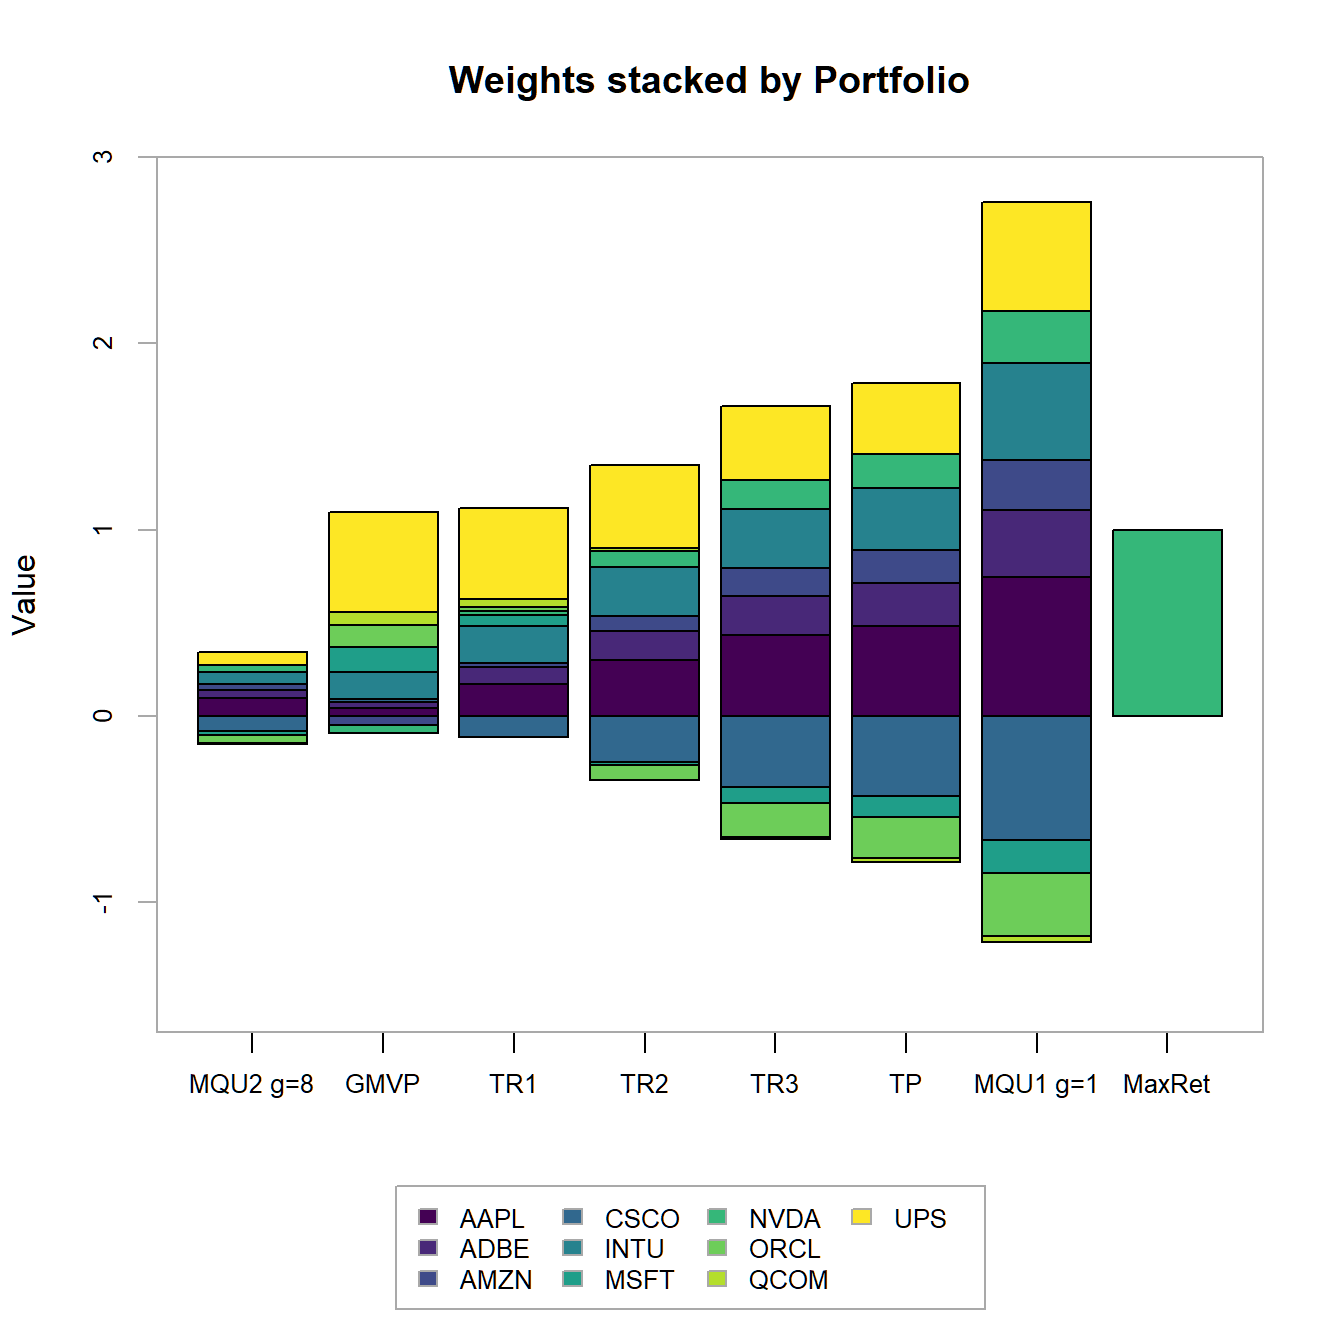 Portfolio weights stacked by portfolio for all optimized portfolios.